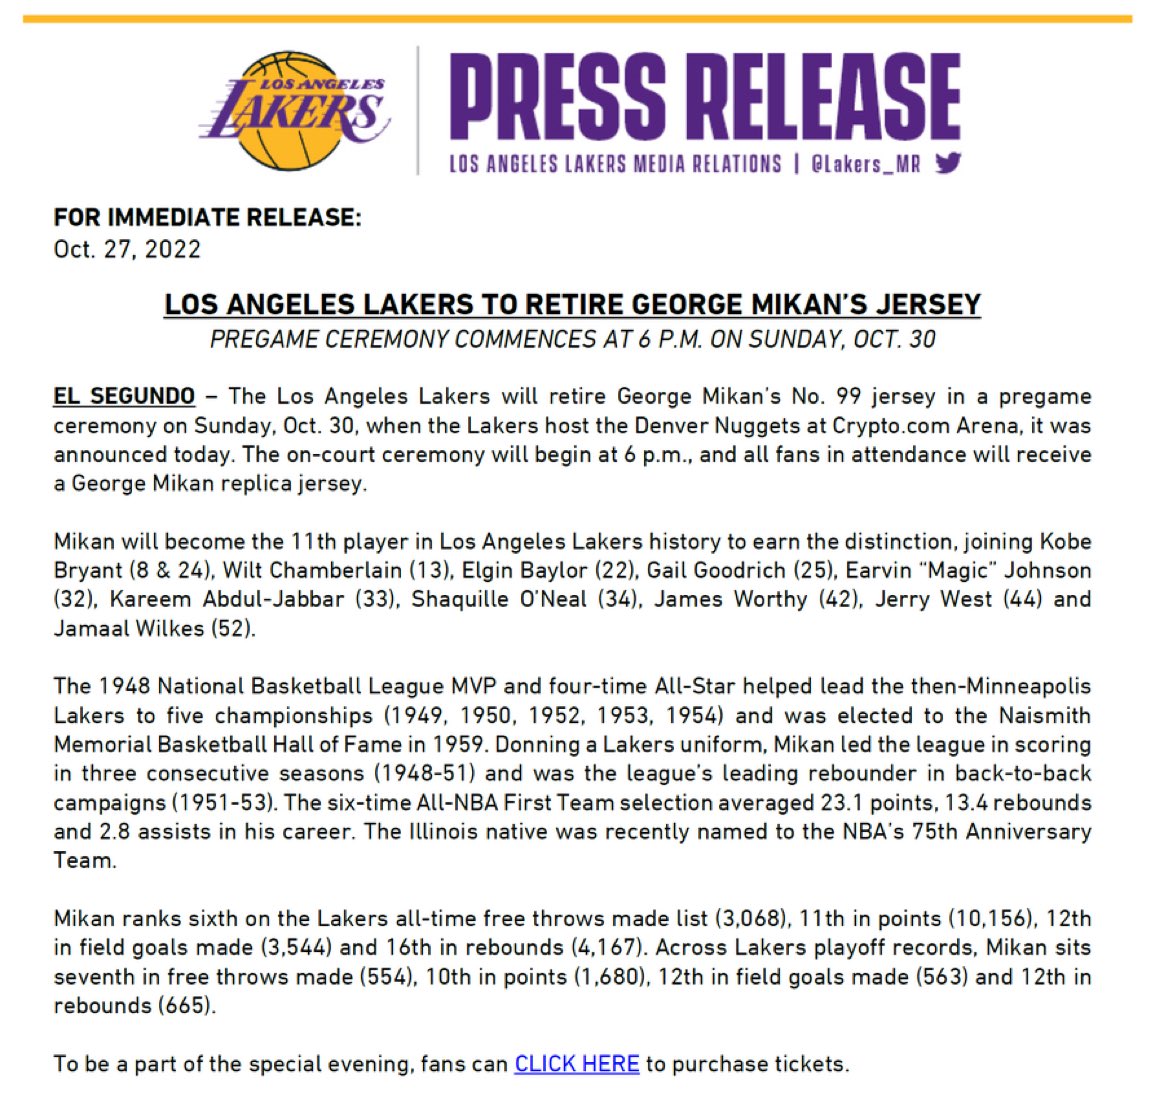 Lakers retire George Mikan's No. 99 jersey in pregame ceremony